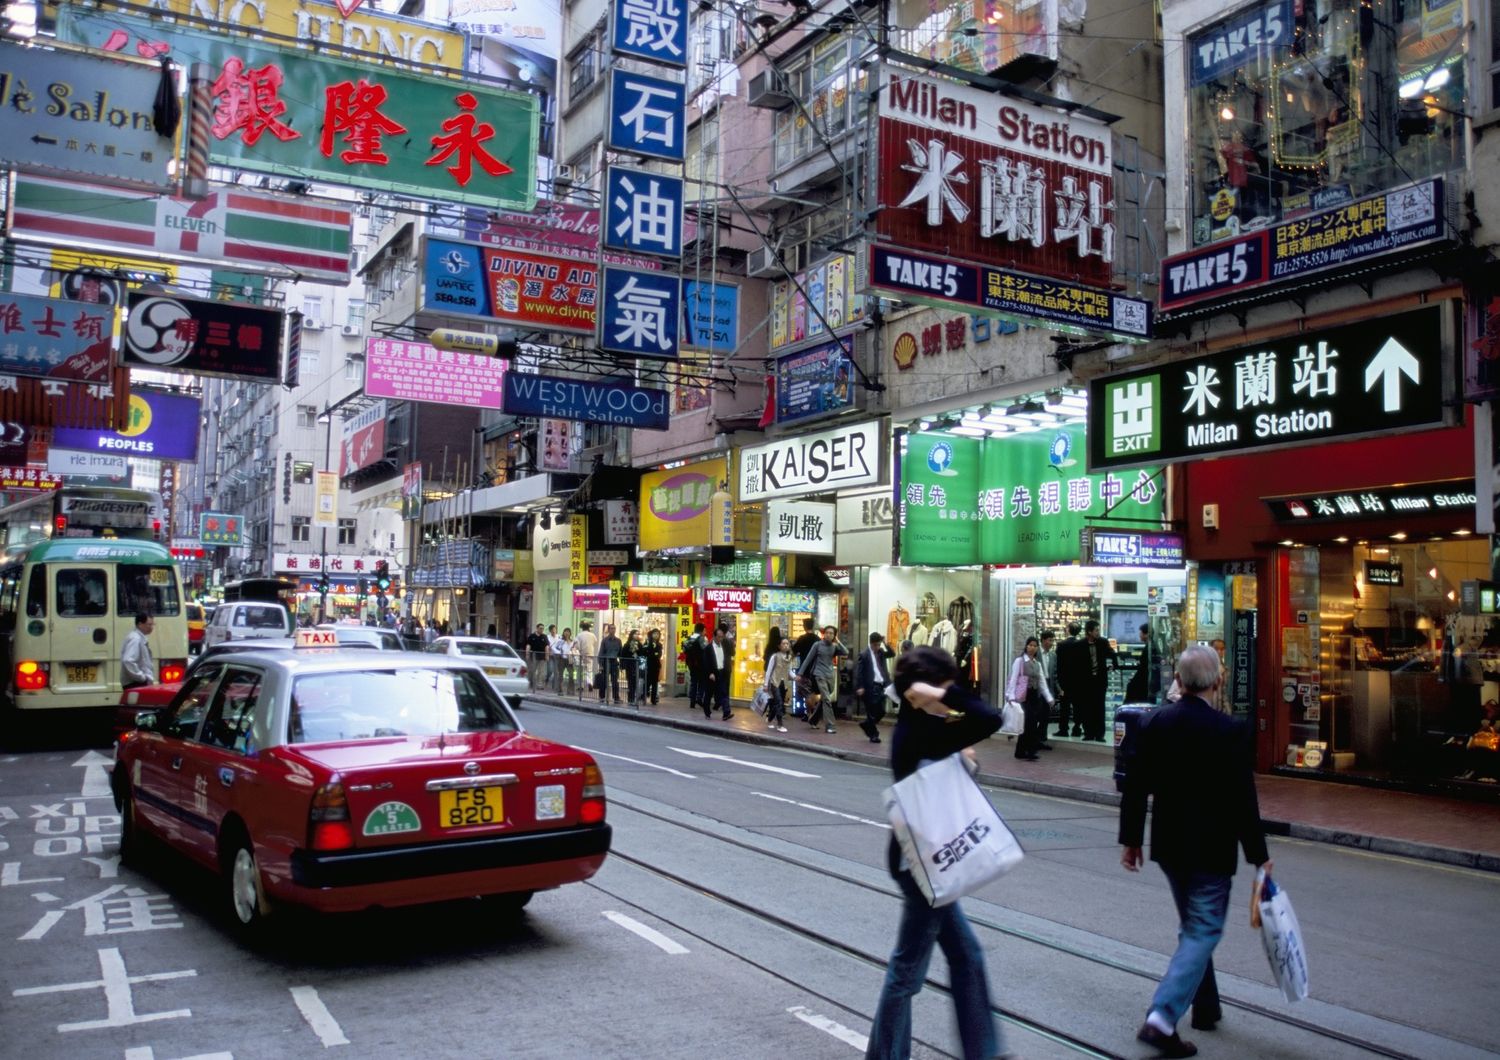 Hong Kong - Febbraio. E' il momento ideale per andare alla ricerca di occasioni, poich&eacute; molti negozi, mercati e centri commerciali offrono sconti di fine stagione. Le tariffe degli hotel sono pi&ugrave; basse. La seconda settimana di febbraio 2015 costava 976 HKD al giorno, il 37% in meno della settimana pi&ugrave; costosa, a cavallo di Capodanno. Febbraio &egrave; un mese fantastico per godersi Hong Kong e il suo skyline mozzafiato, poich&eacute; il Capodanno cinese cade spesso in febbraio, cos&igrave; come il Festival delle Lanterne, che illumina con le sue luci tutta la citt&agrave;. (Booking.com)